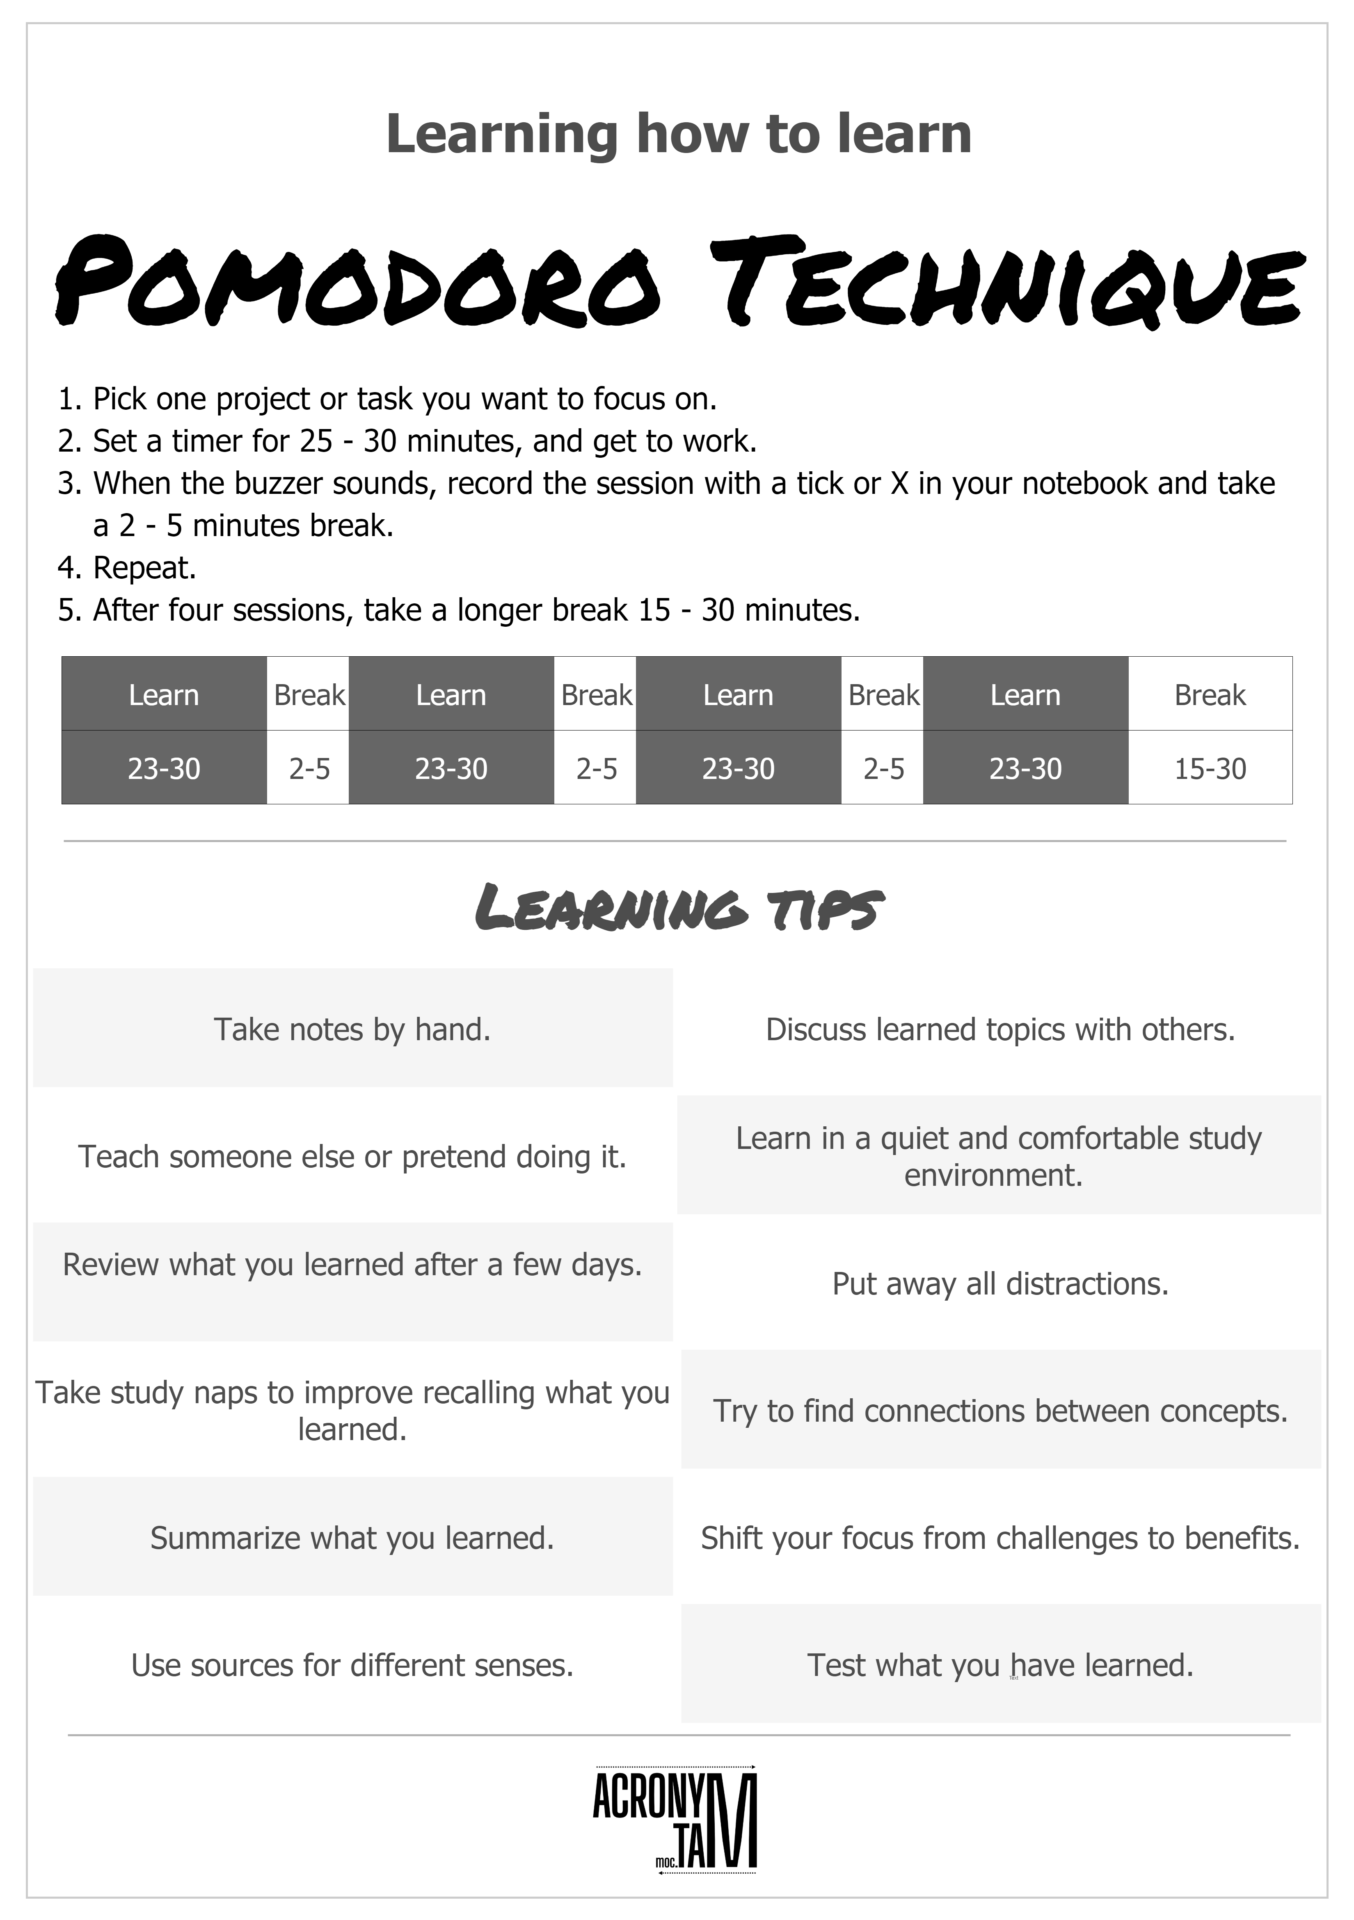 Pomodoro Technique and tips